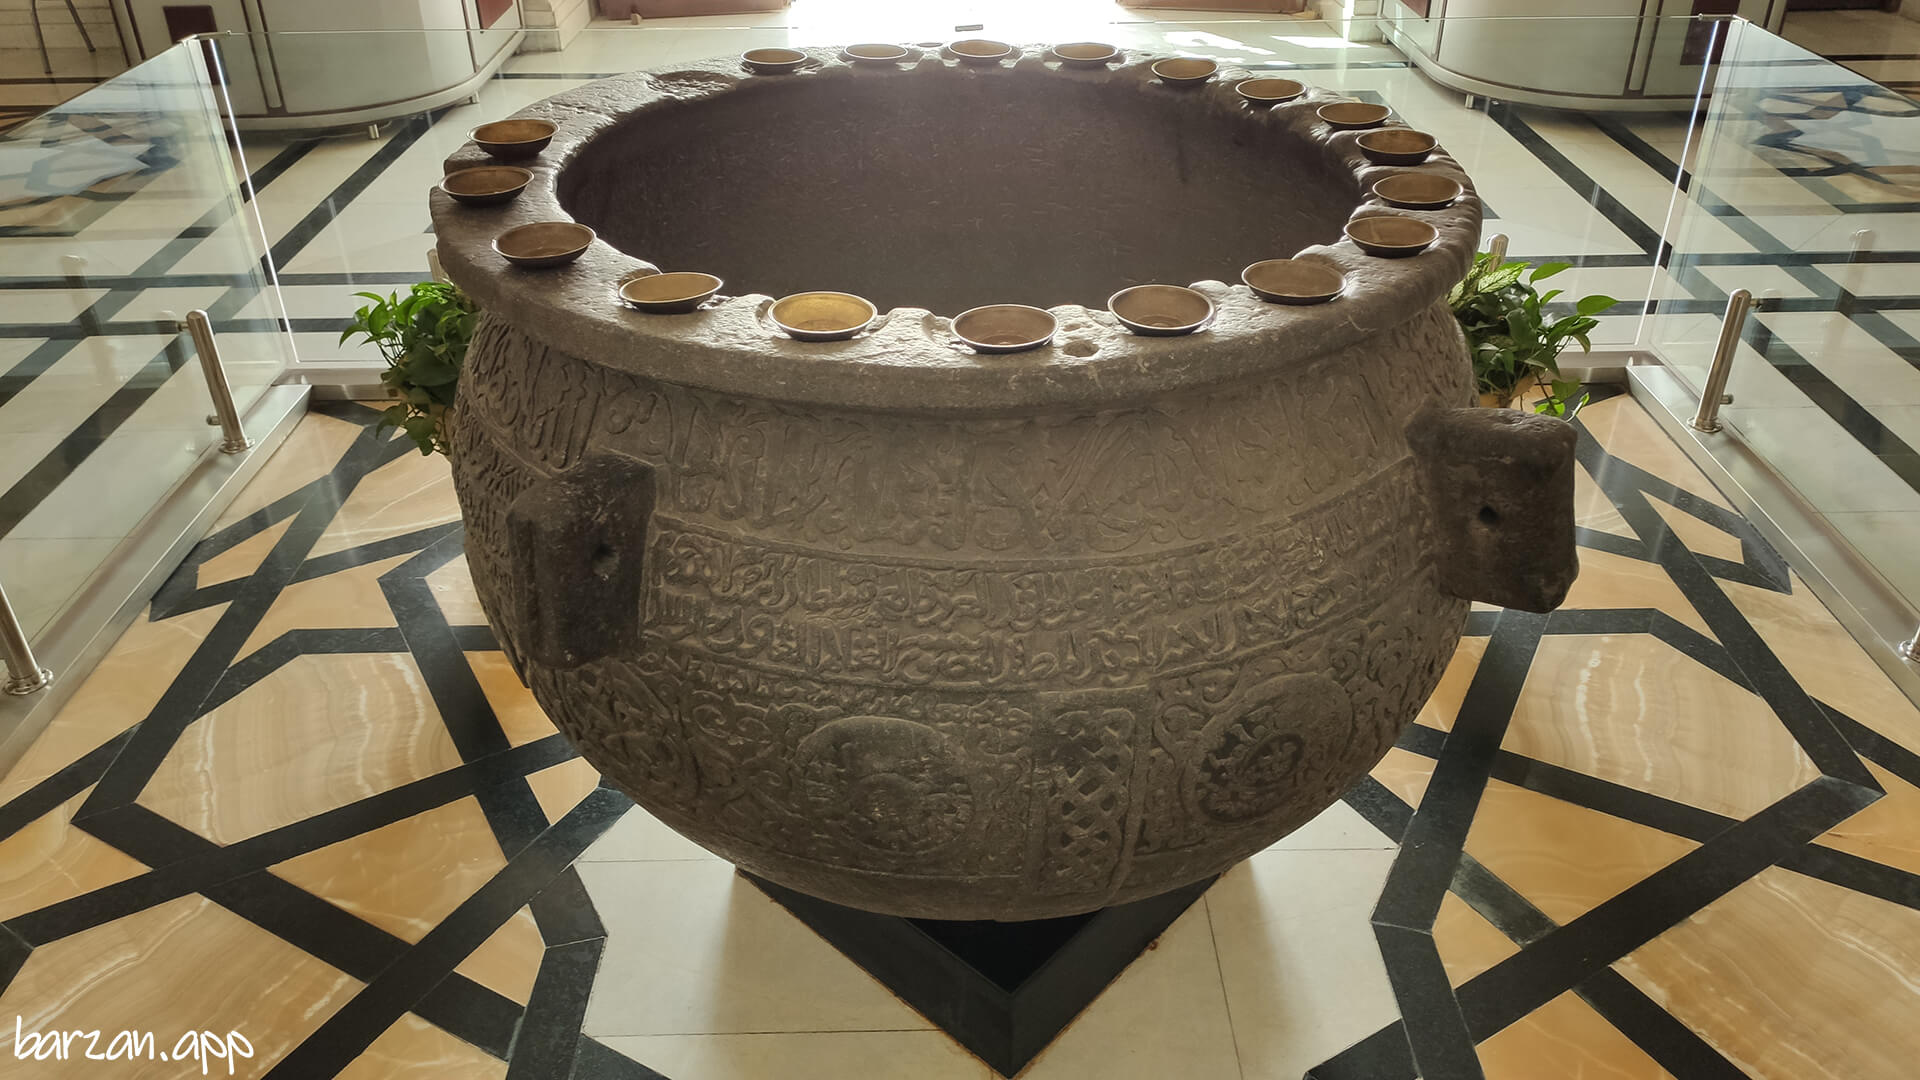 موزه رضوی|جاذبه های گردشگری مشهد